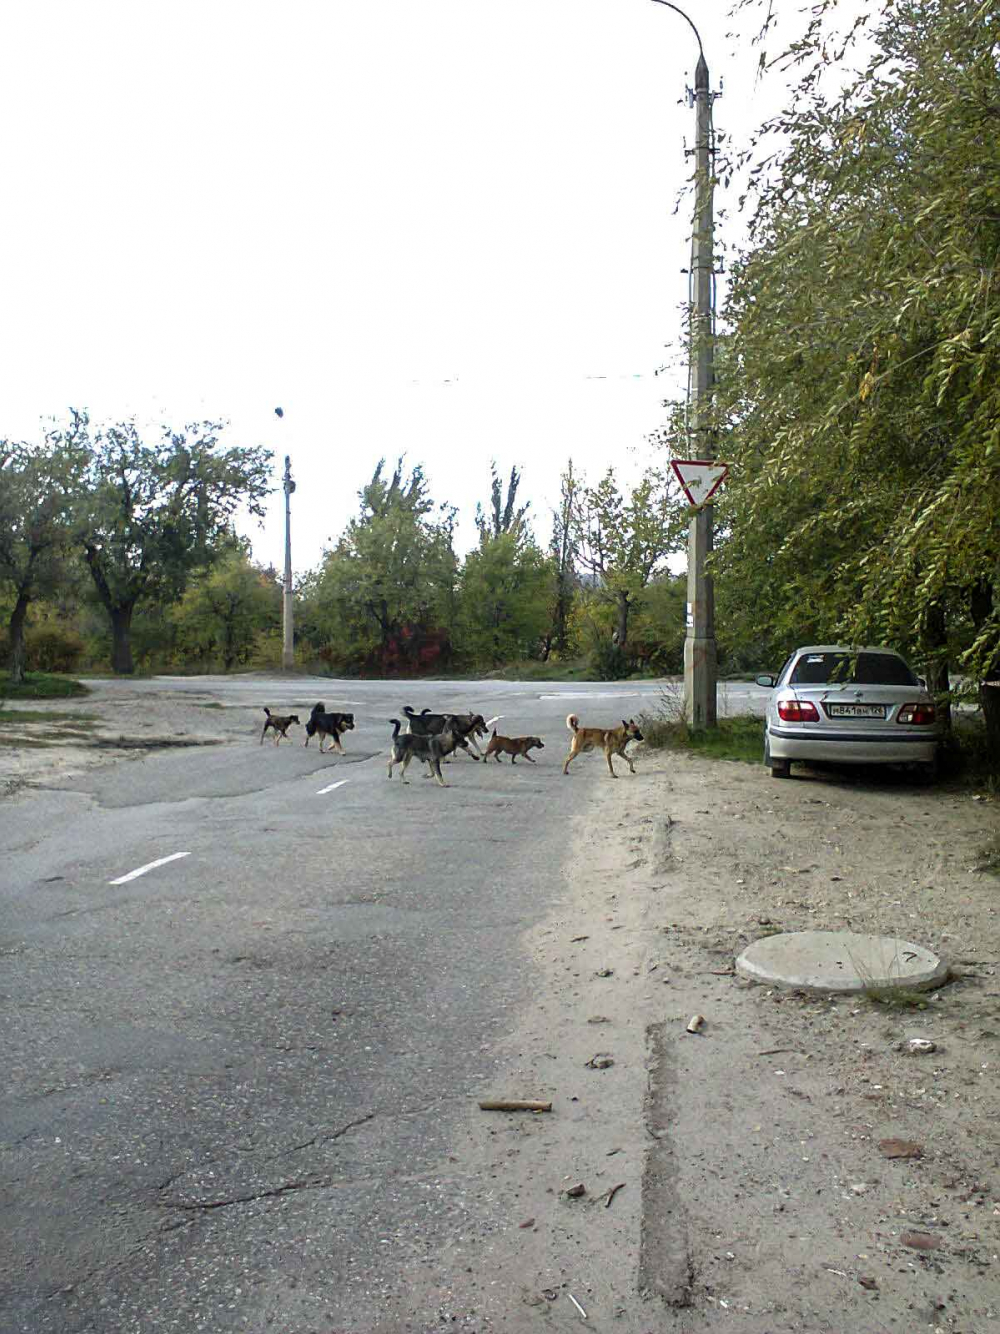 В Камышине пора устанавливать дорожные знаки «собачий переход», - камышанин